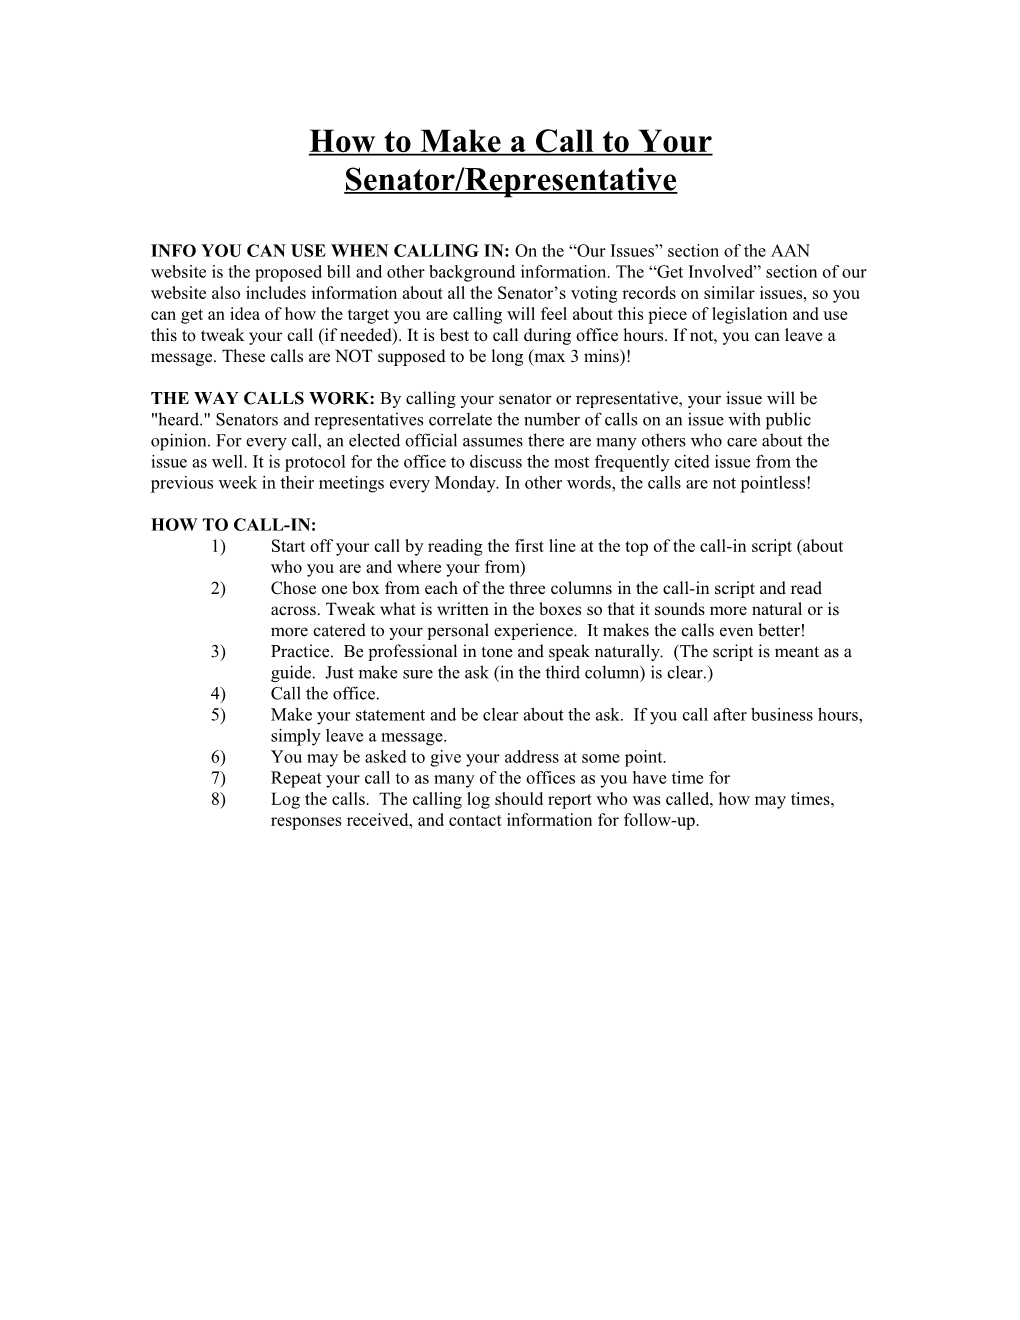 How to Make a Call to Your Senator/Representative